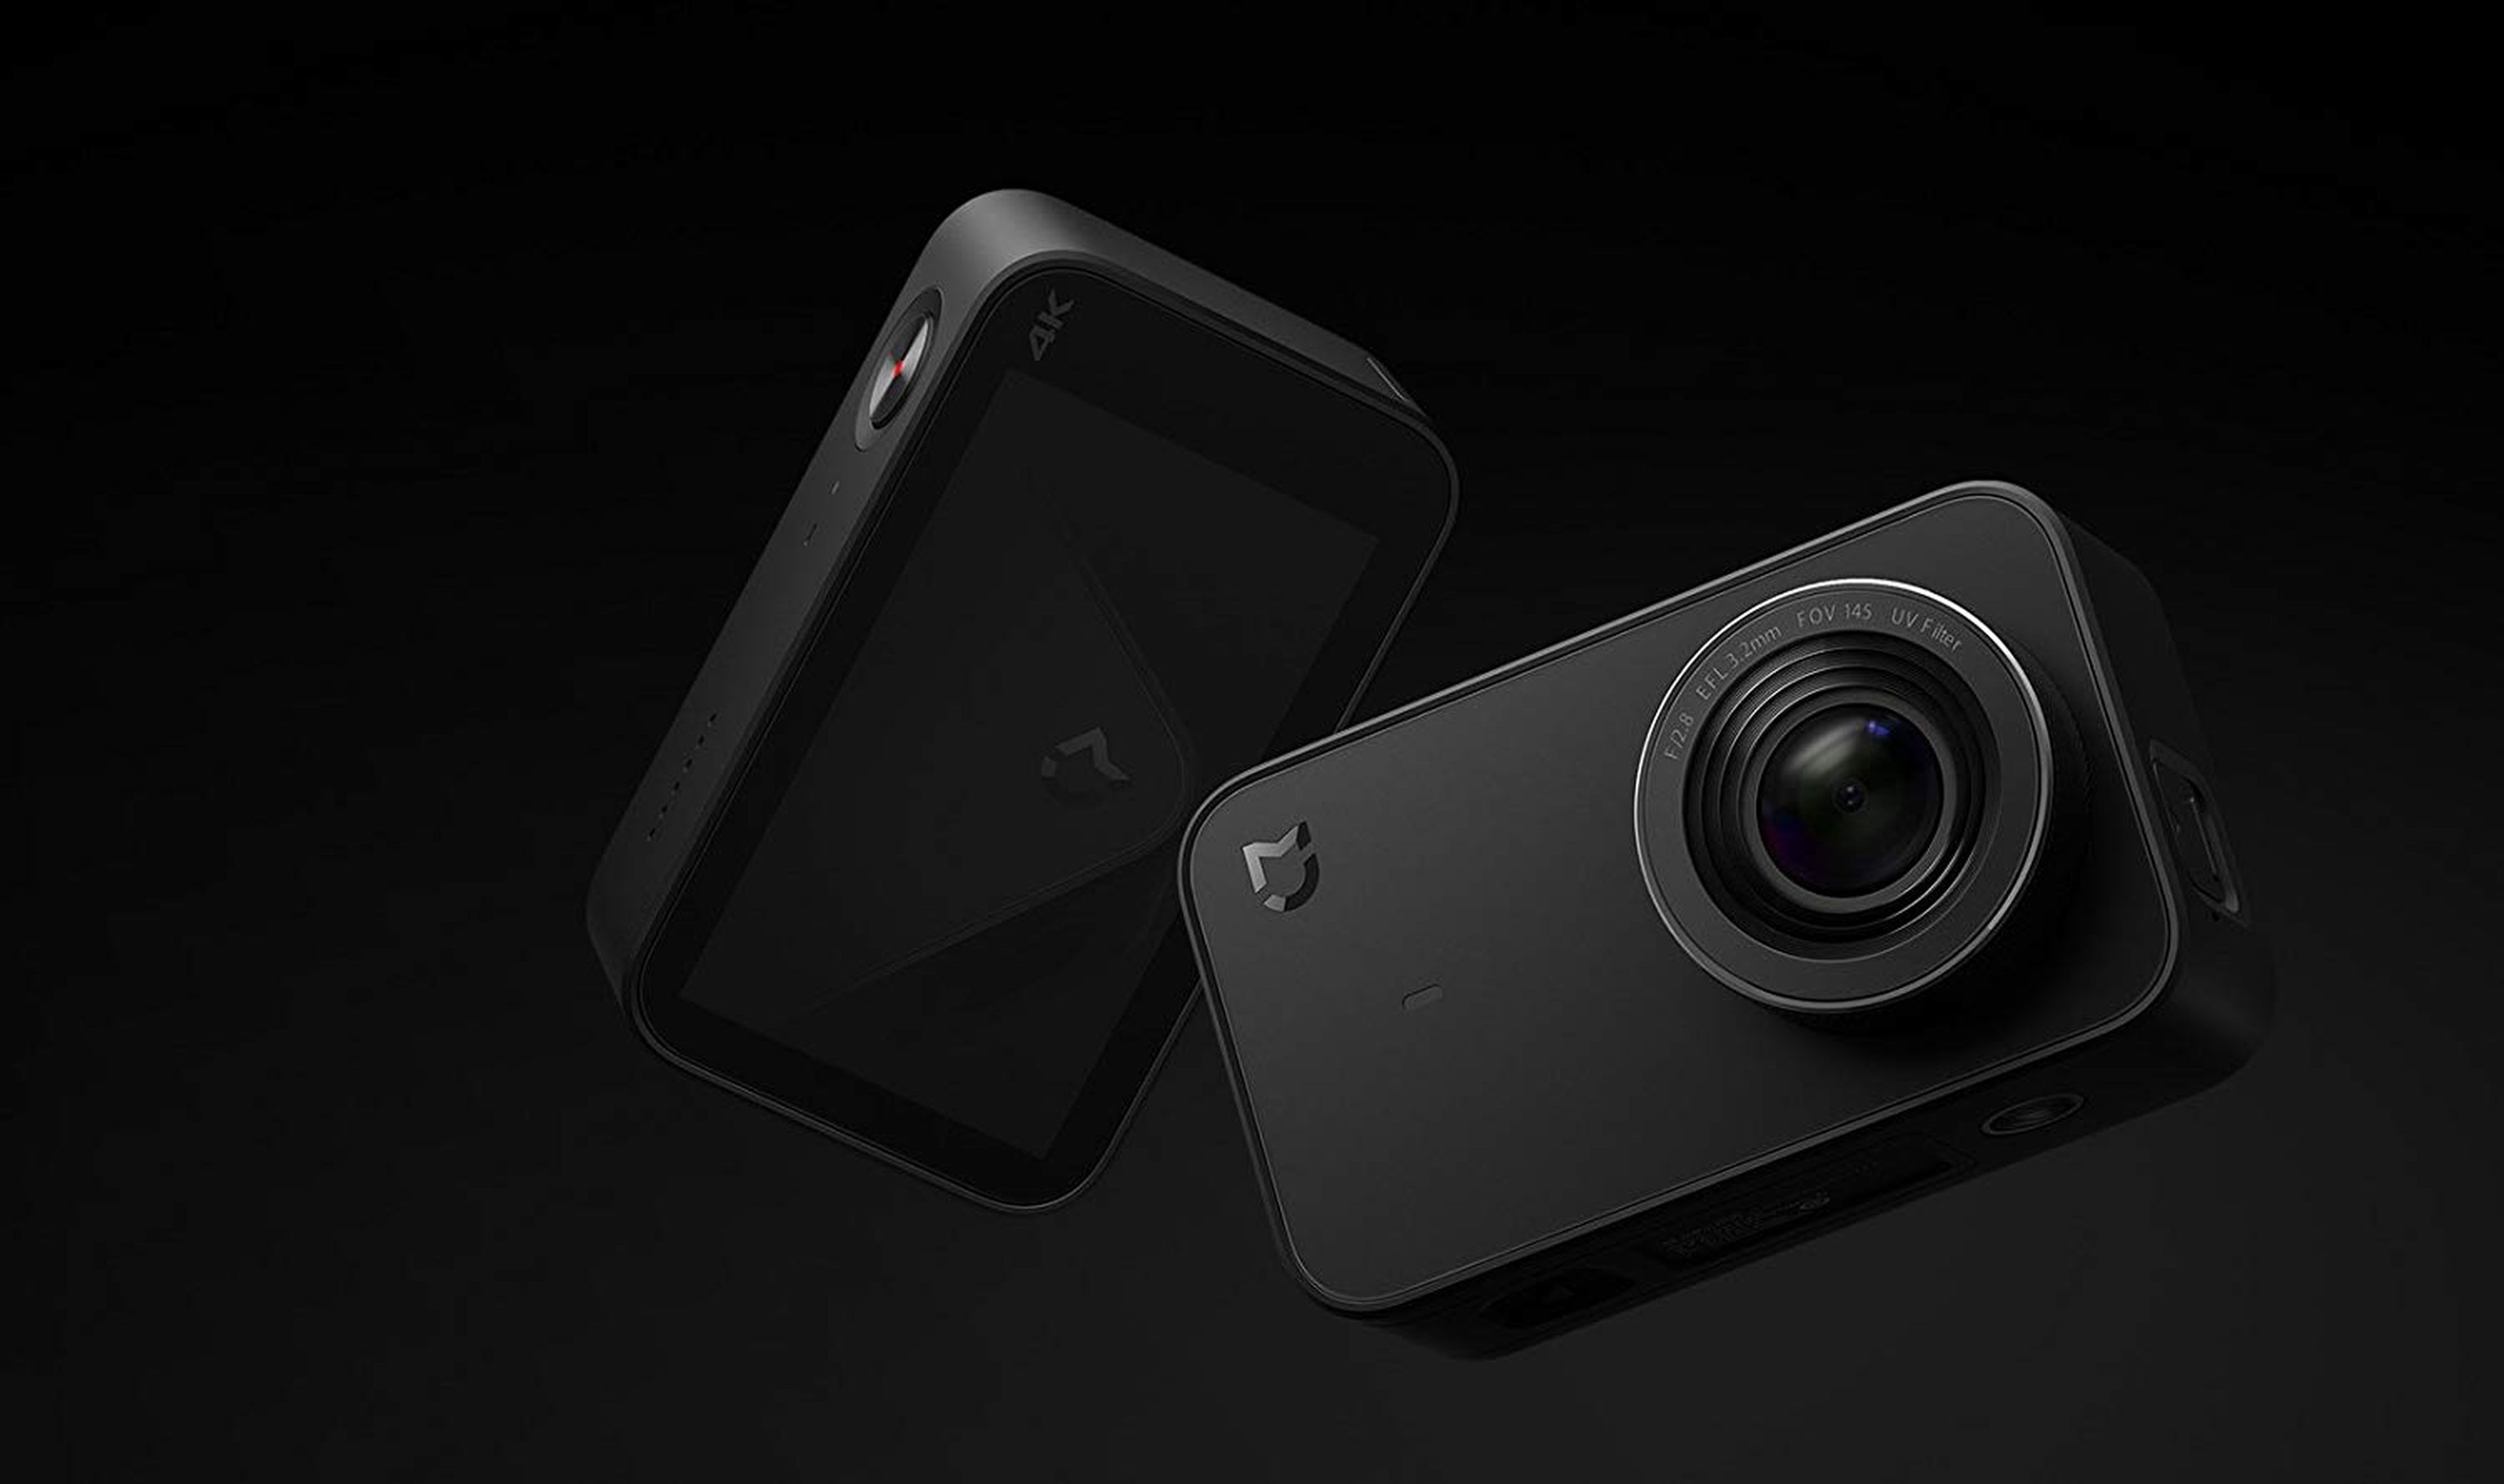 Xiaomi Mi Action Camera 4K